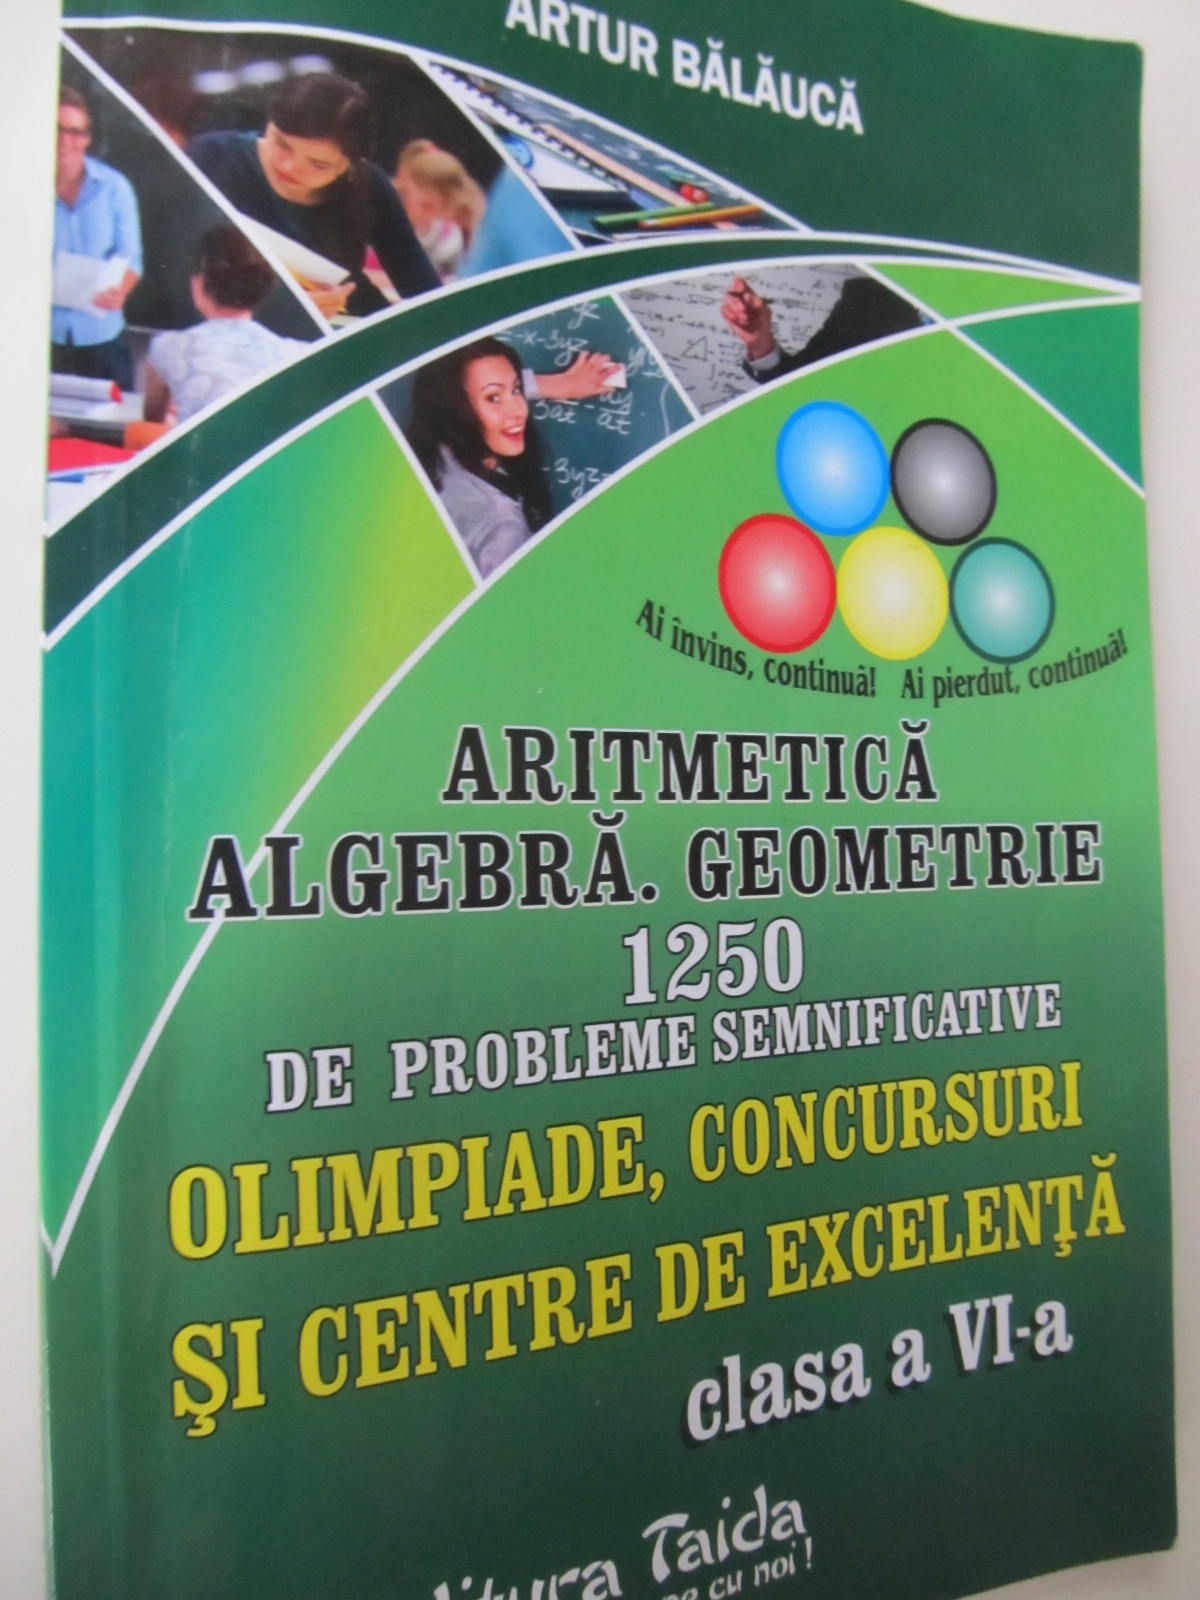 Carte Aritmetica Algebra Geometrie 1250 de probleme semnificative Olimpiade Concursuri si Centre de excelenta clasa a VI-a - Artur Balauca